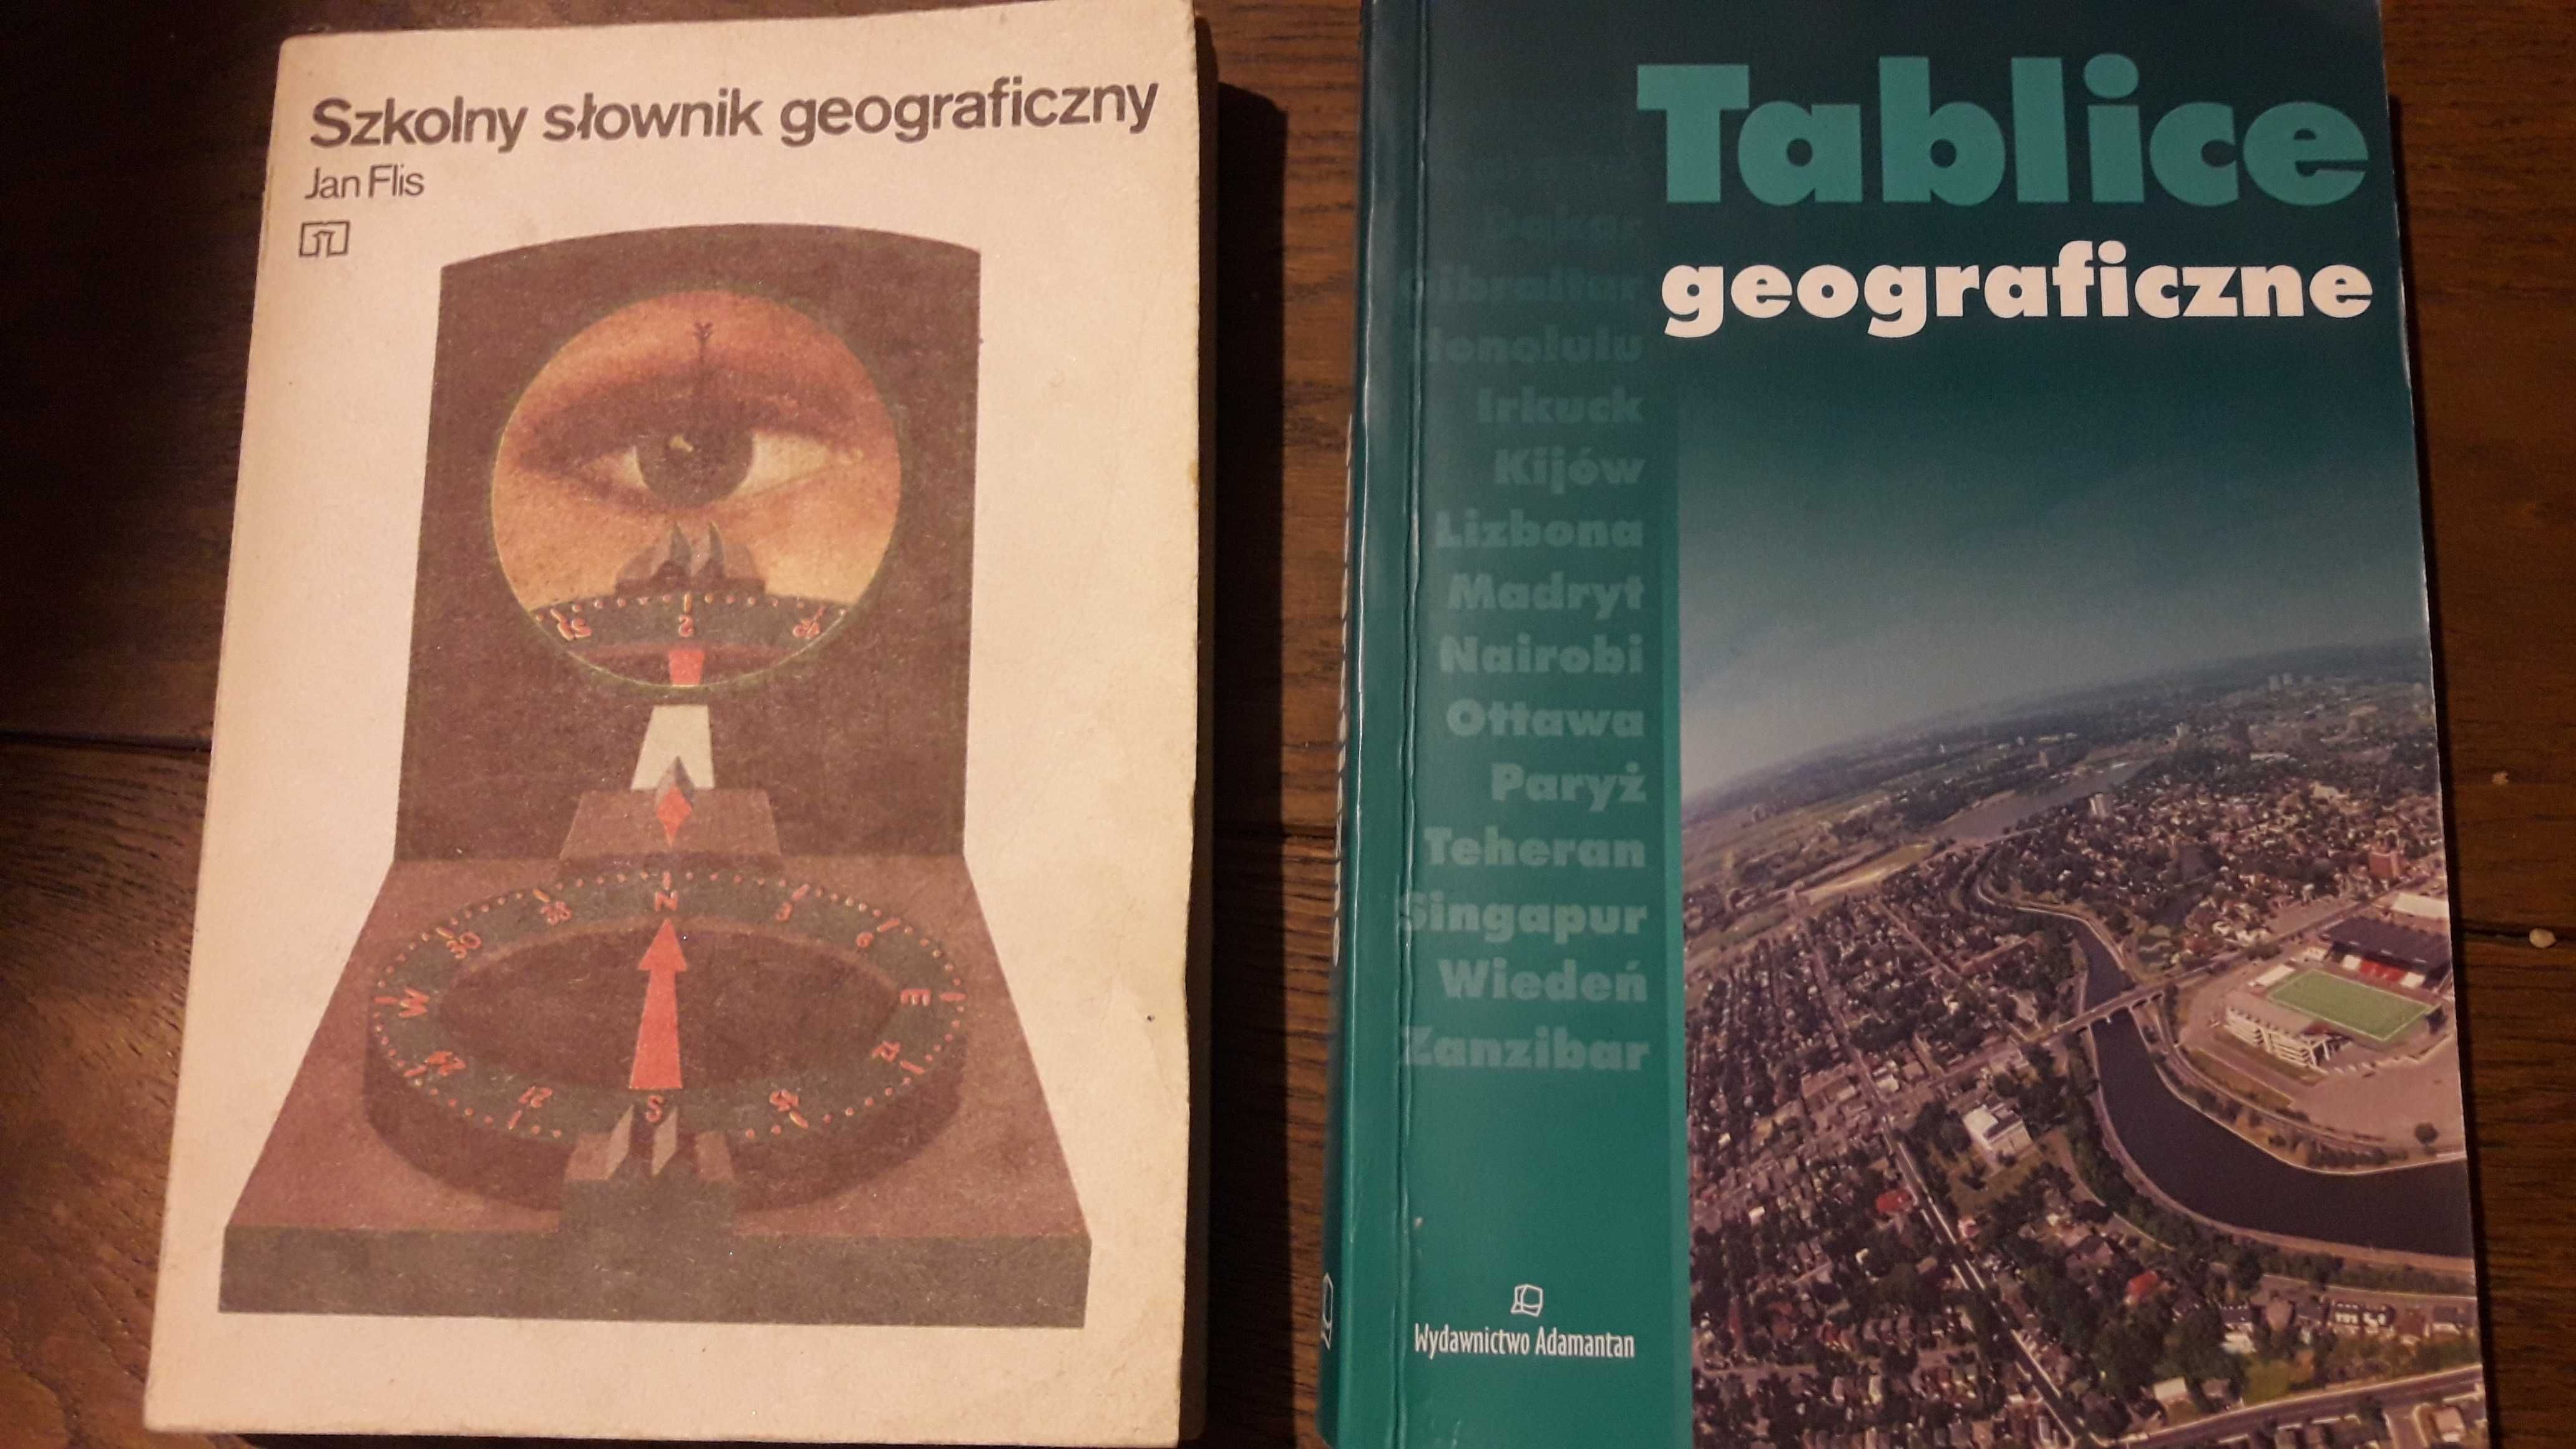 Szkolny słownik geograficzny, Tablice geograficzne